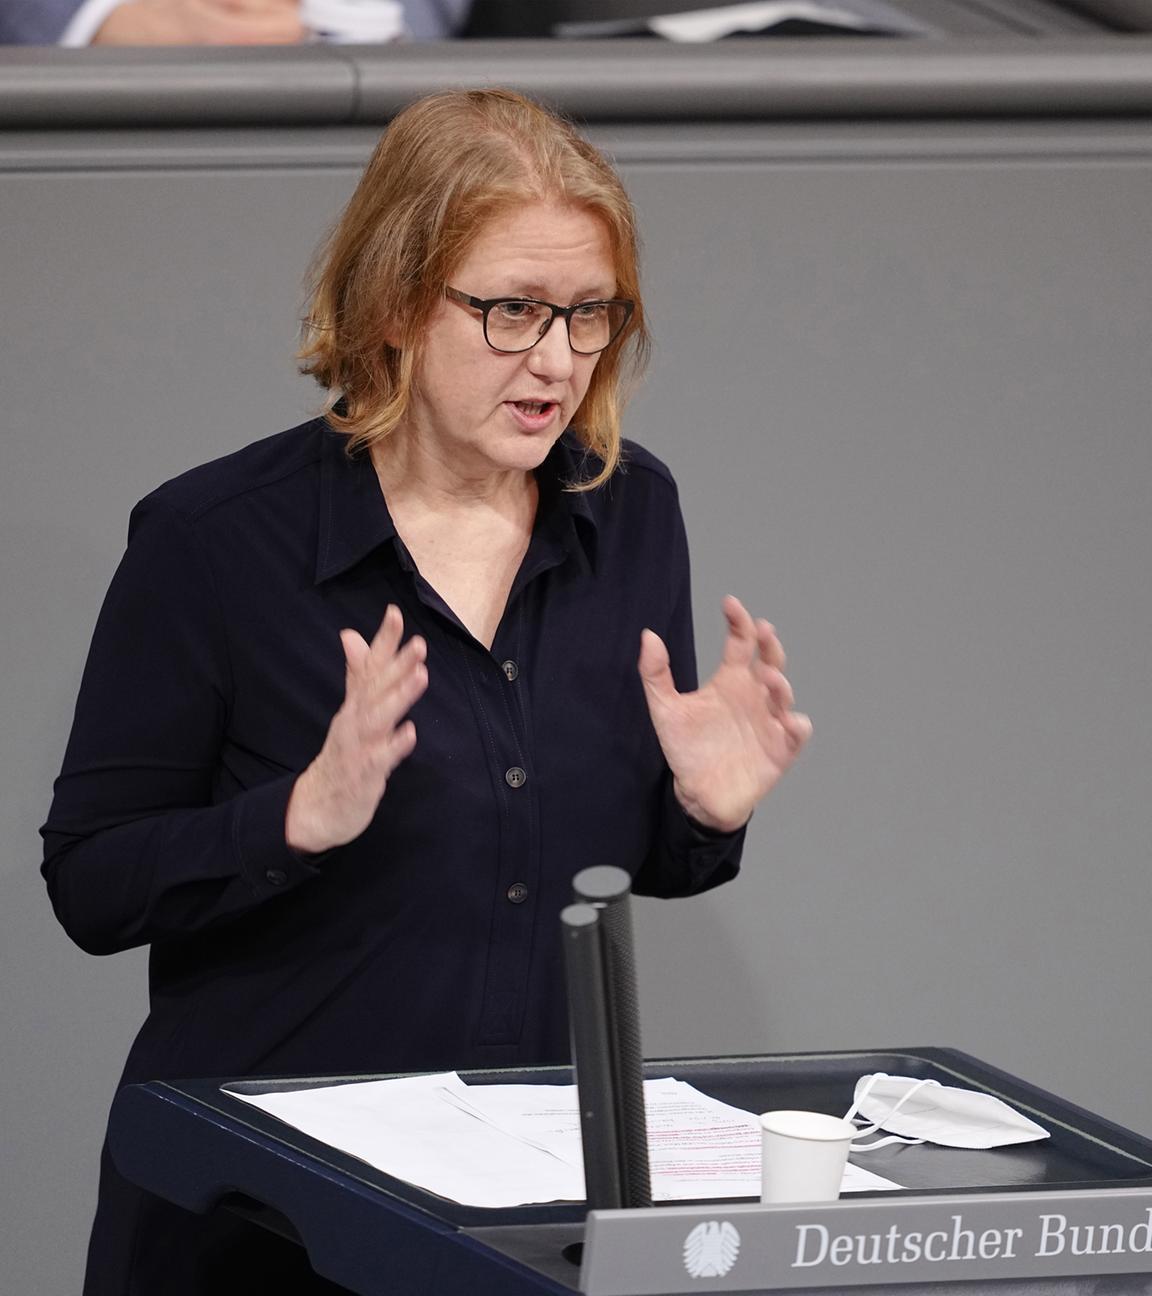 Archiv: Lisa Paus, Bundestagsabgeordnete von Bündnis 90/Die Grünen, spricht im Bundestag zu den Abgeordneten. 